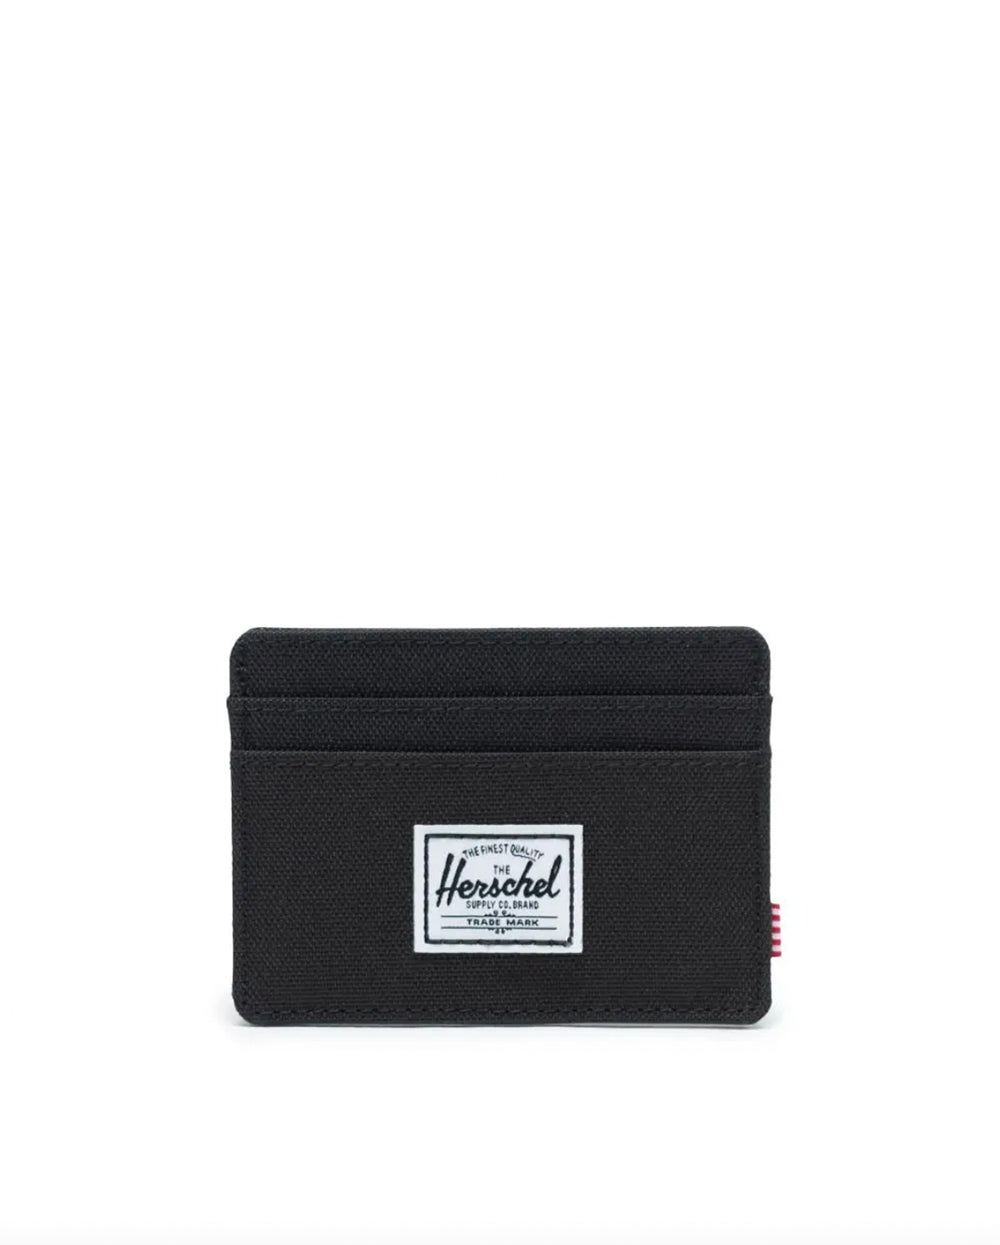 Herschel Supply Co Charlie Cardholder Wallet - Black - Sun Diego Boardshop